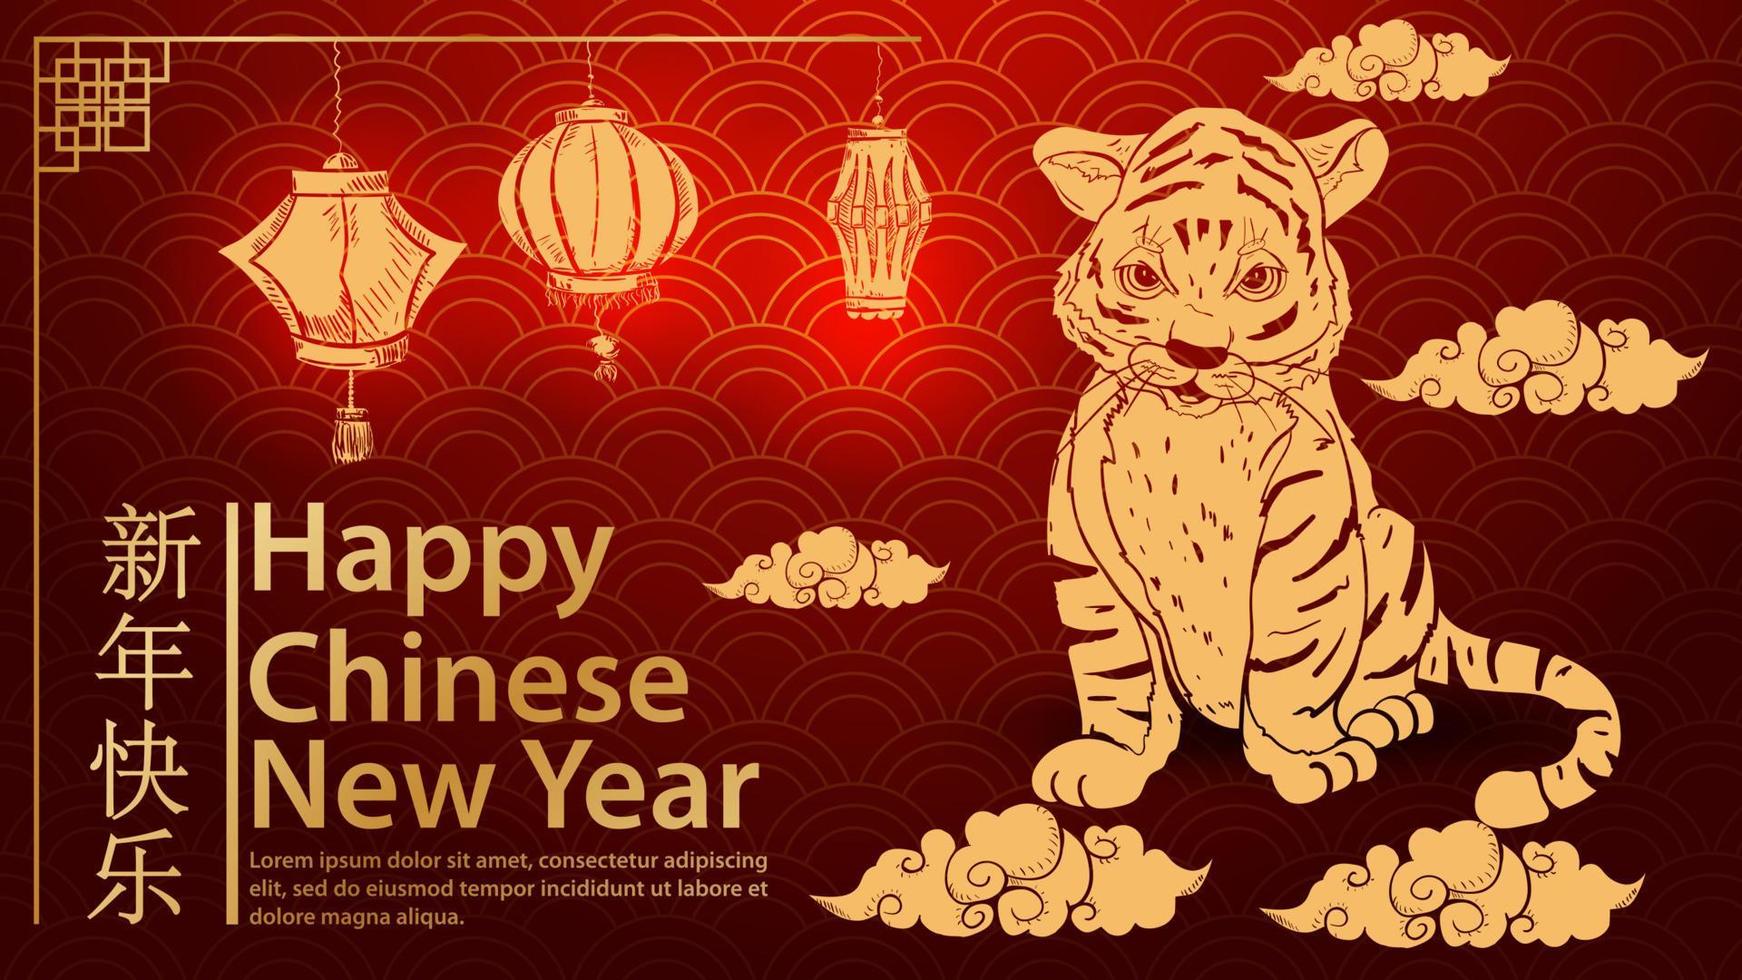 un petit tigre sourit assis sur les nuages le symbole du nouvel an chinois et l'inscription félicitations vague de fond rouge vecteur